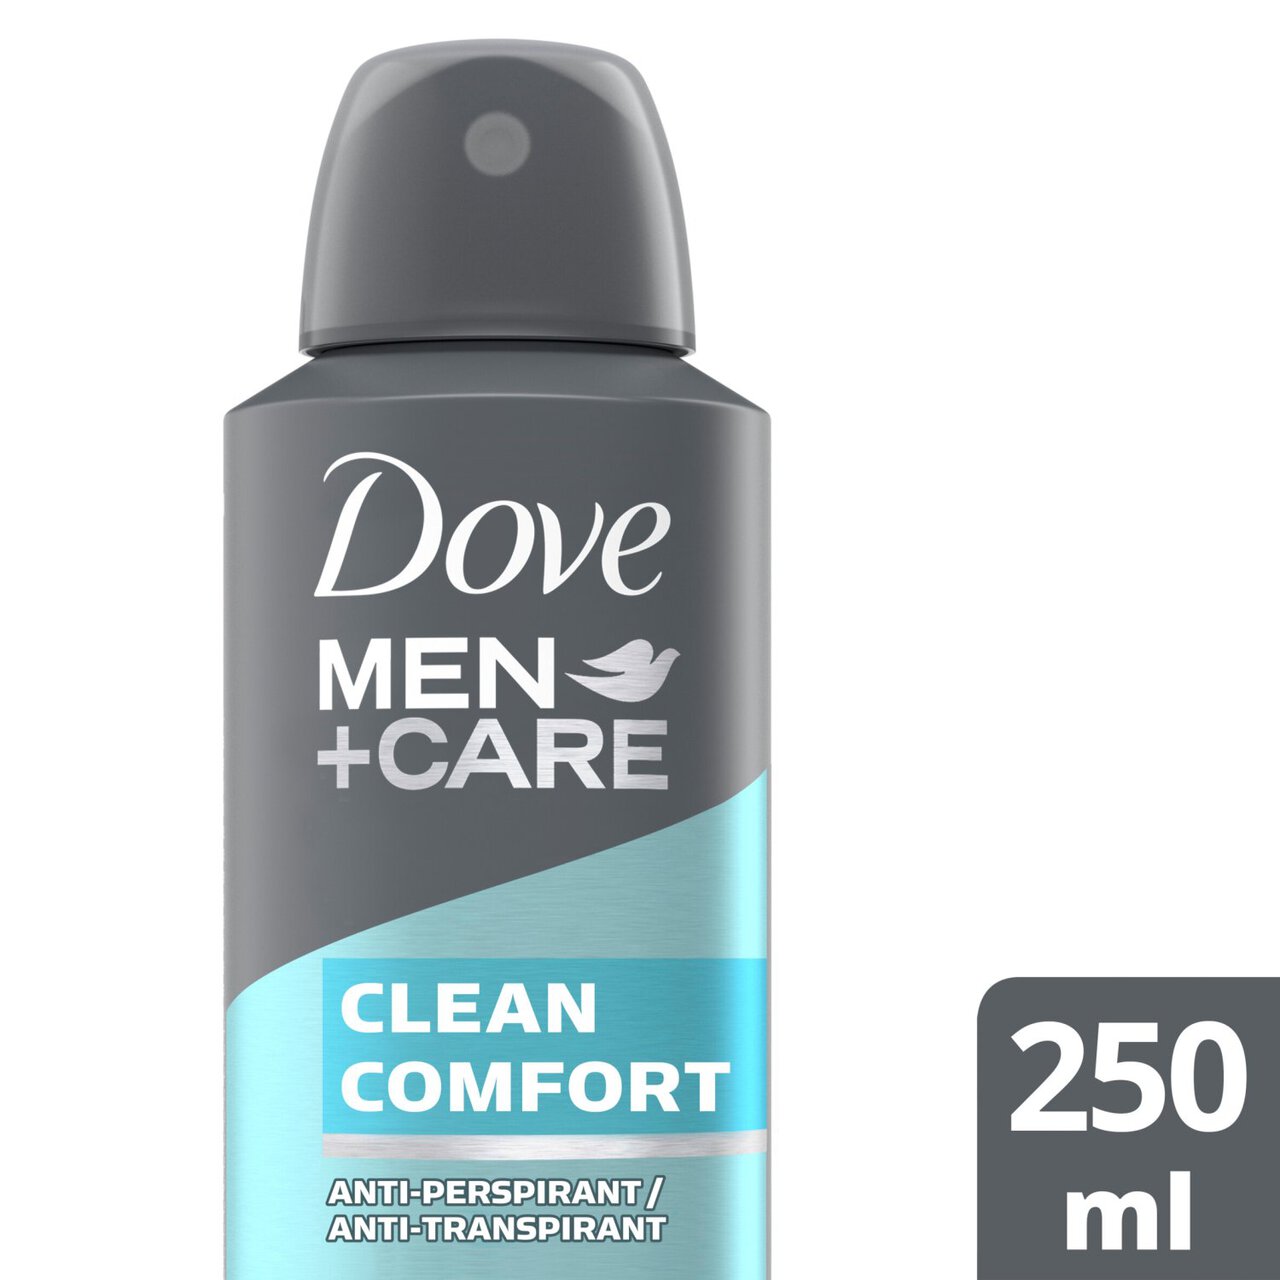 Dove Men+Care Clean Comfort Aerosol Anti-Perspirant Deodorant 250ml